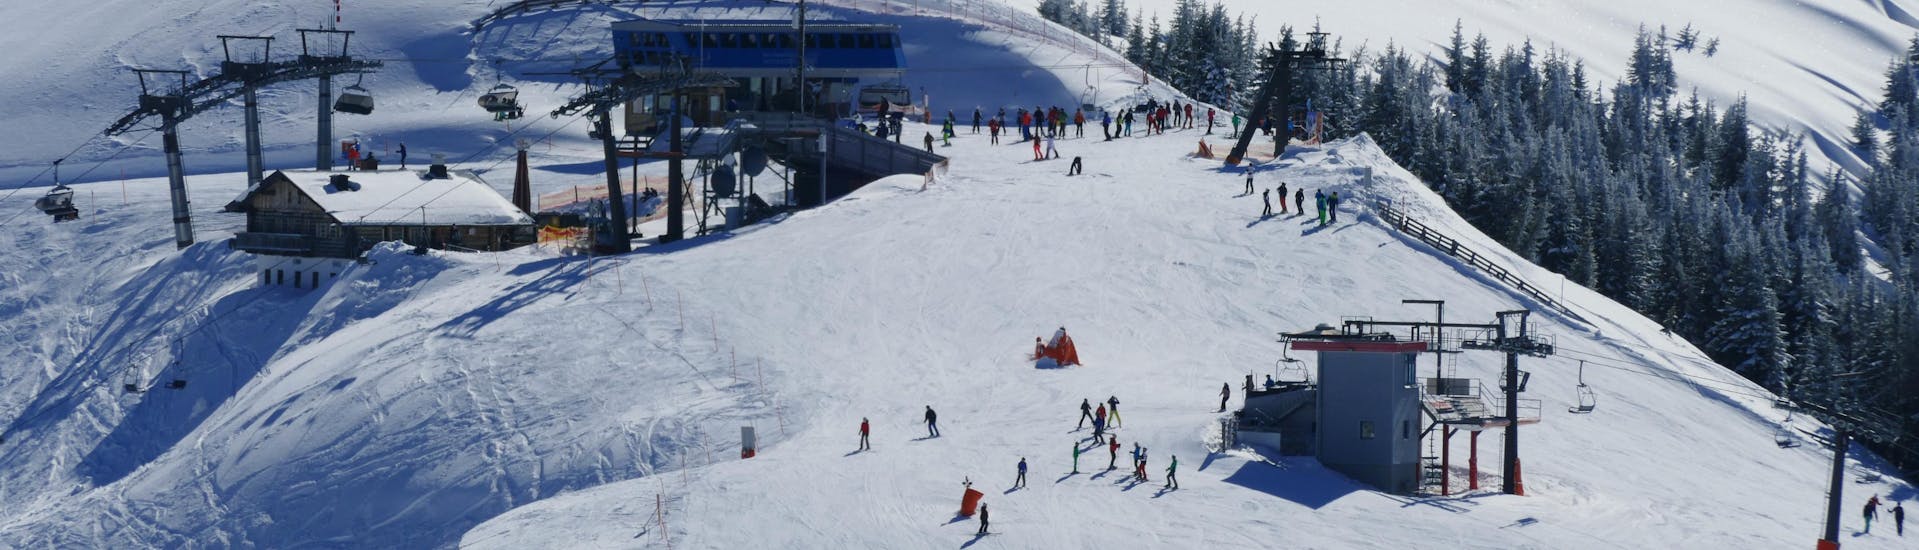 Ausblick auf die sonnige Berglandschaft beim Skifahren lernen mit den Skischulen im Skigebiet Ski Amadé Großarltal.